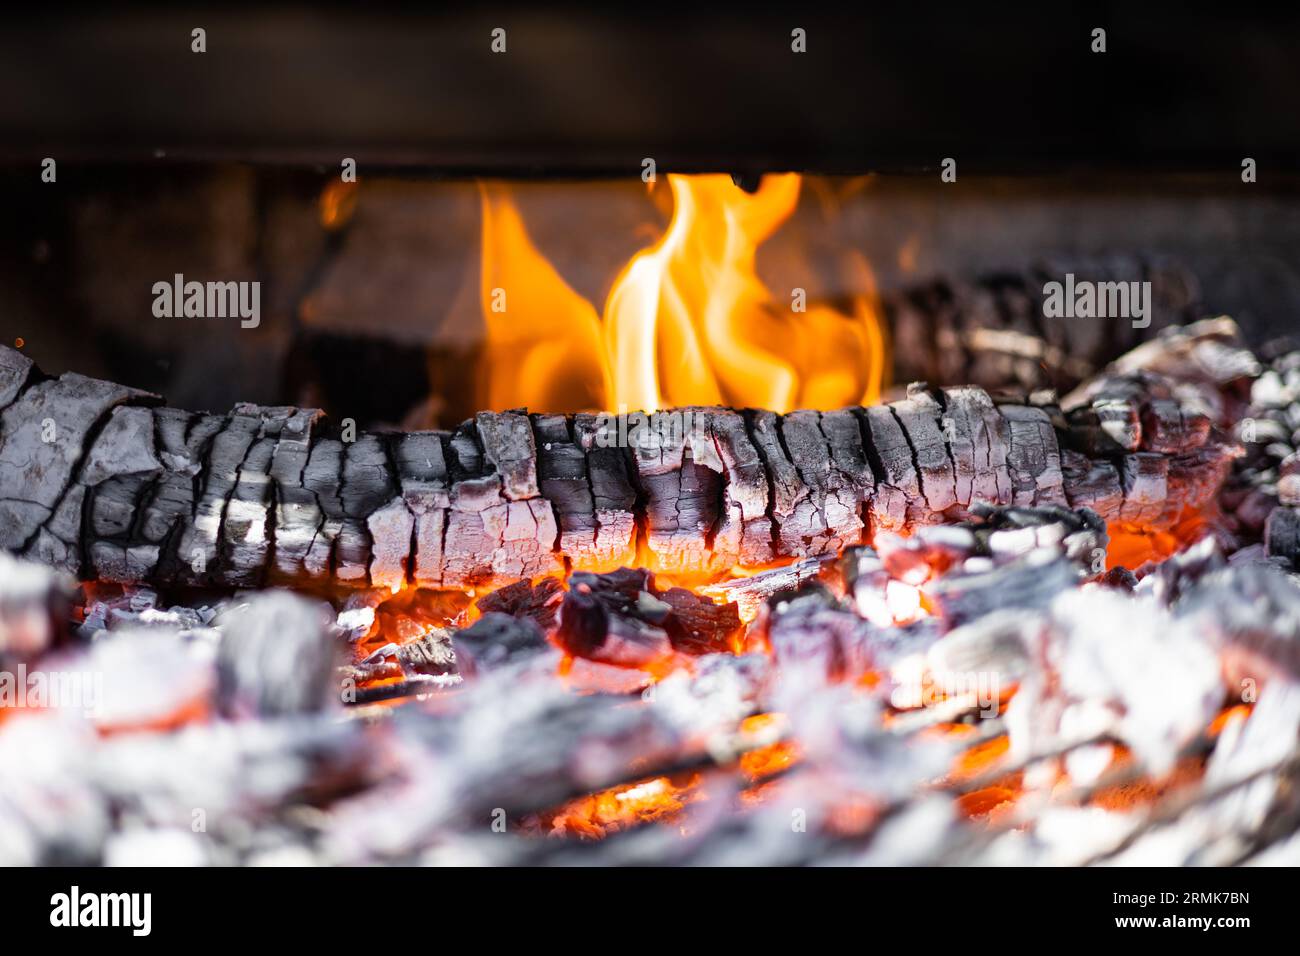 Gril barbecue fosse avec charbons chauds. Briquettes de charbon incandescentes et enflammées pour barbecue au feu. Banque D'Images